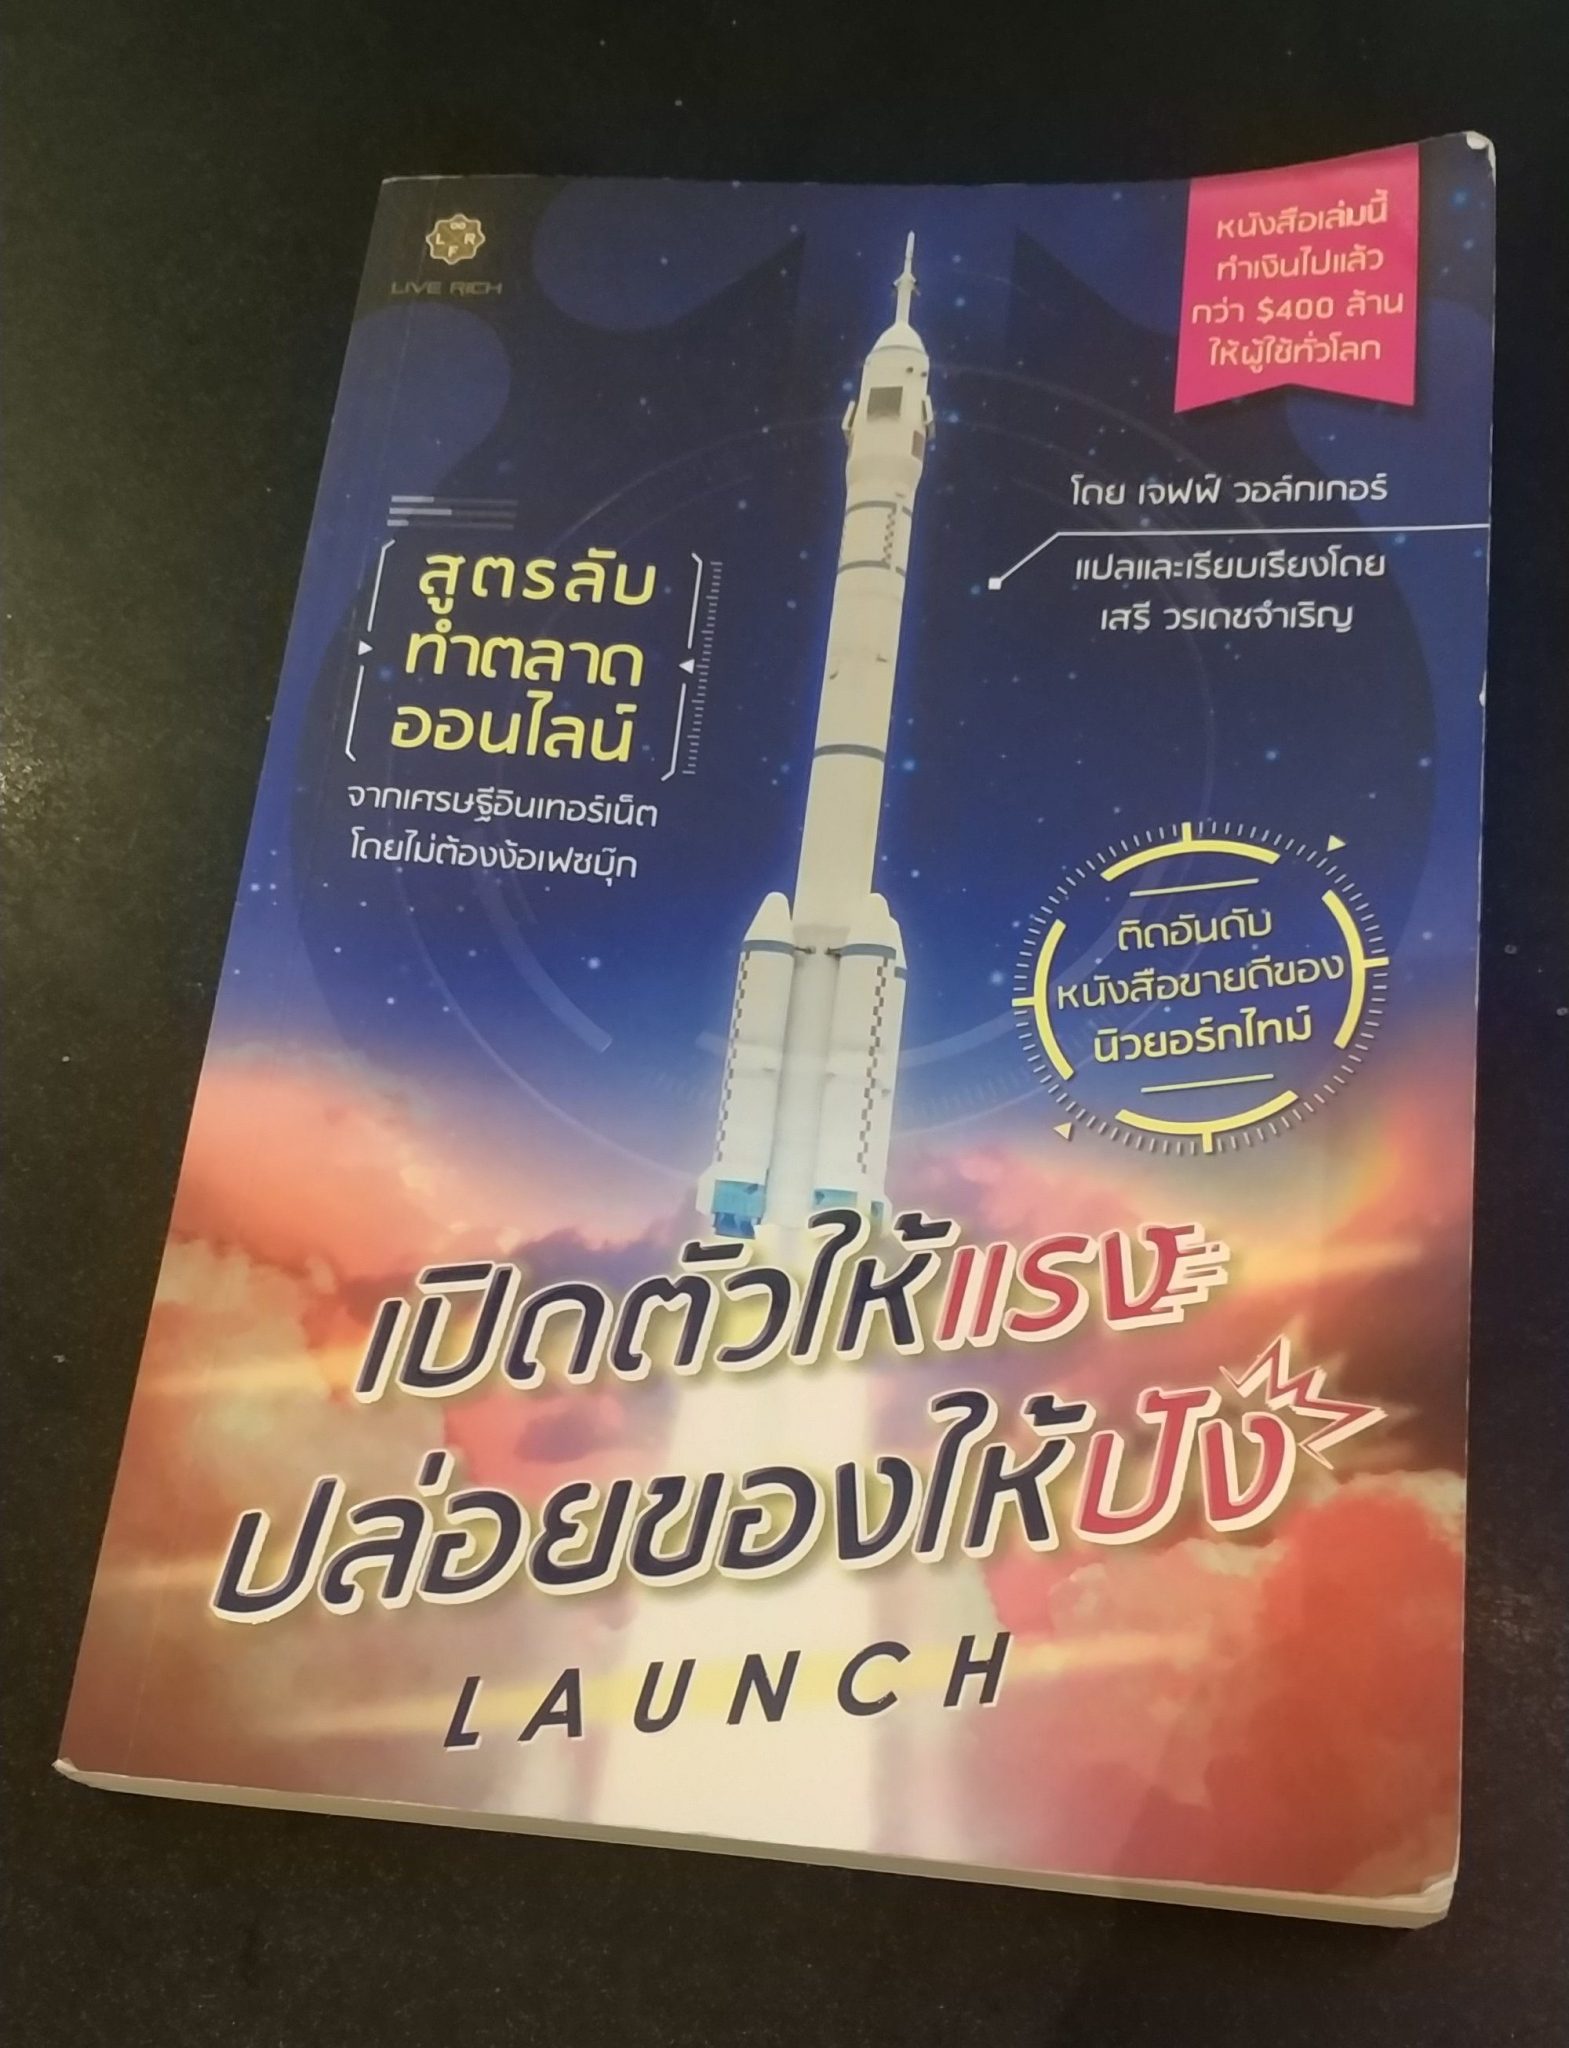 [รีวิว] หนังสือ Launch เปิดตัวให้แรง ปล่อยของให้ปัง